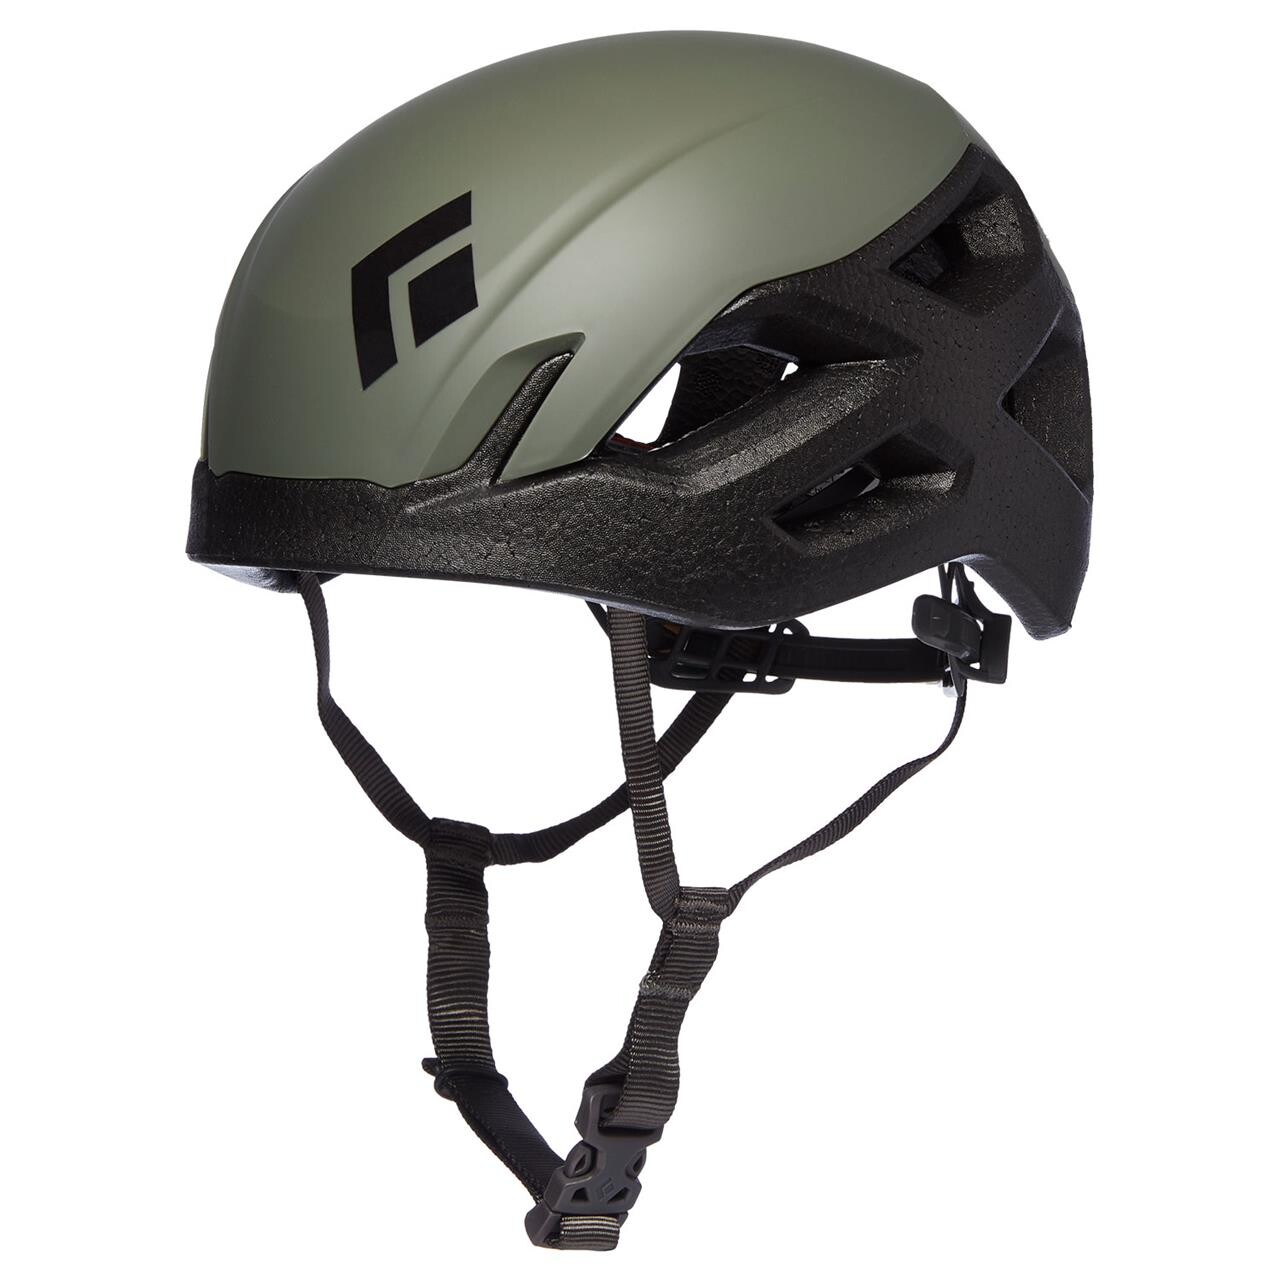 Billede af Black Diamond Vision Helmet (Grøn (TUNDRA) S/M)